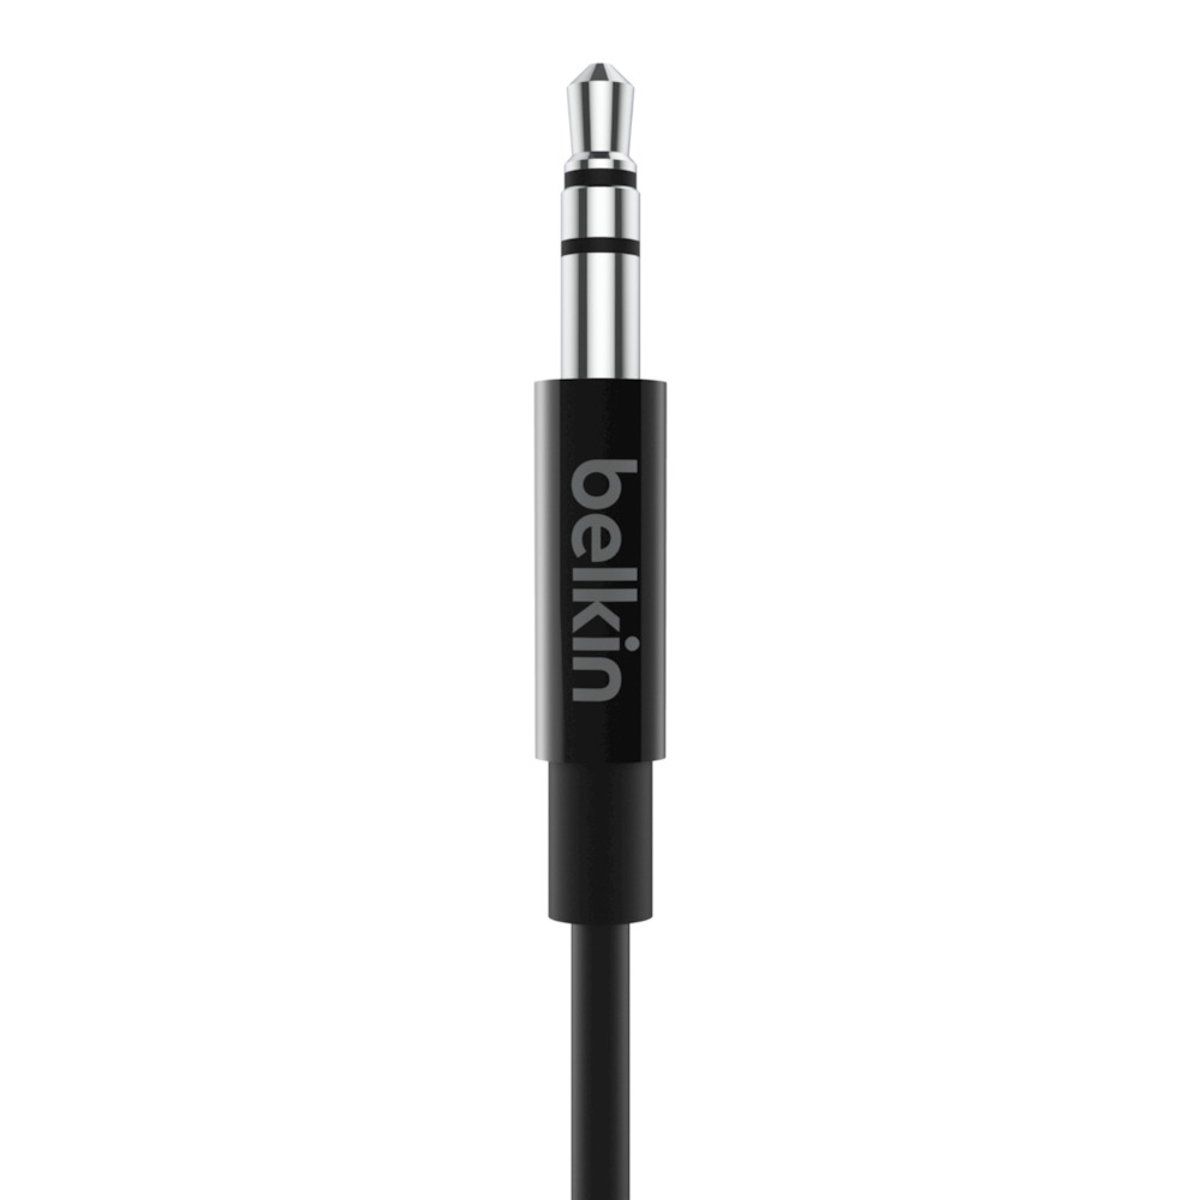 BELKIN USB-C / 3.5mm Audiokabel, Klinke, 90 cm